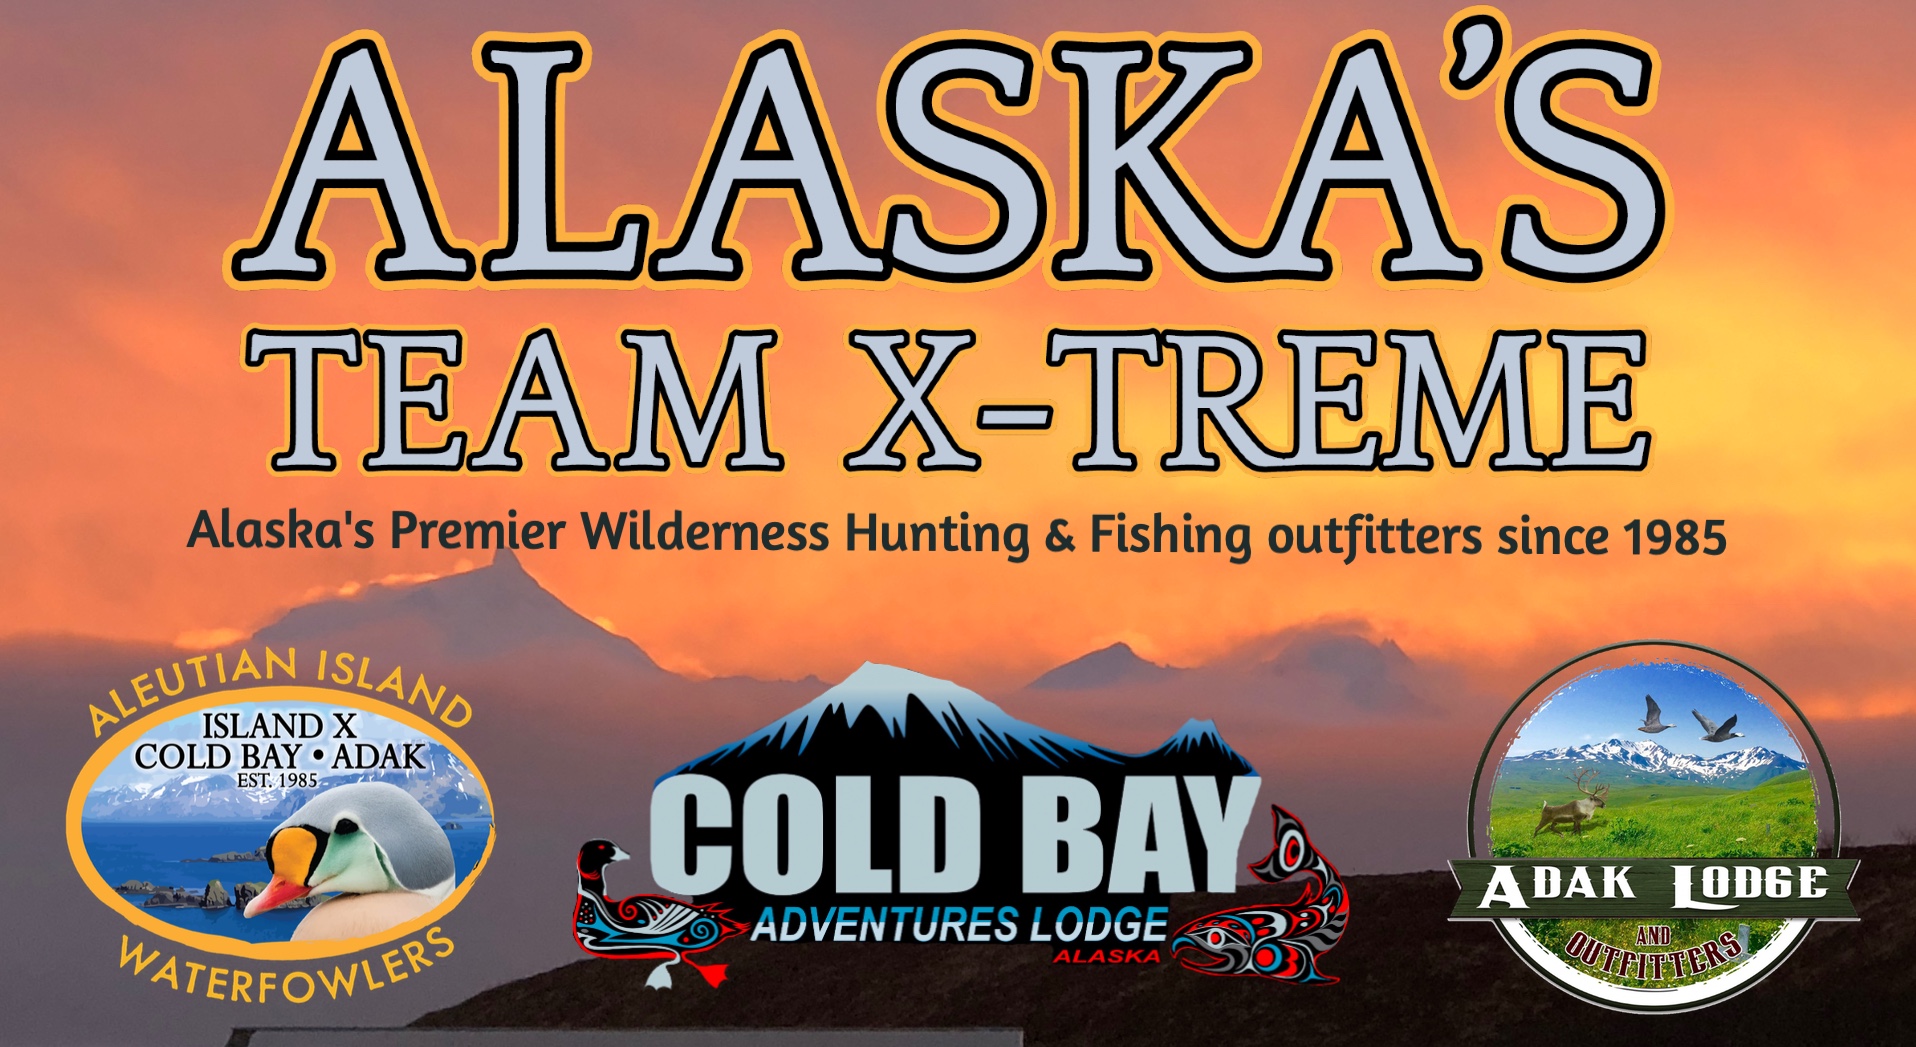 Alaska Team xtreme